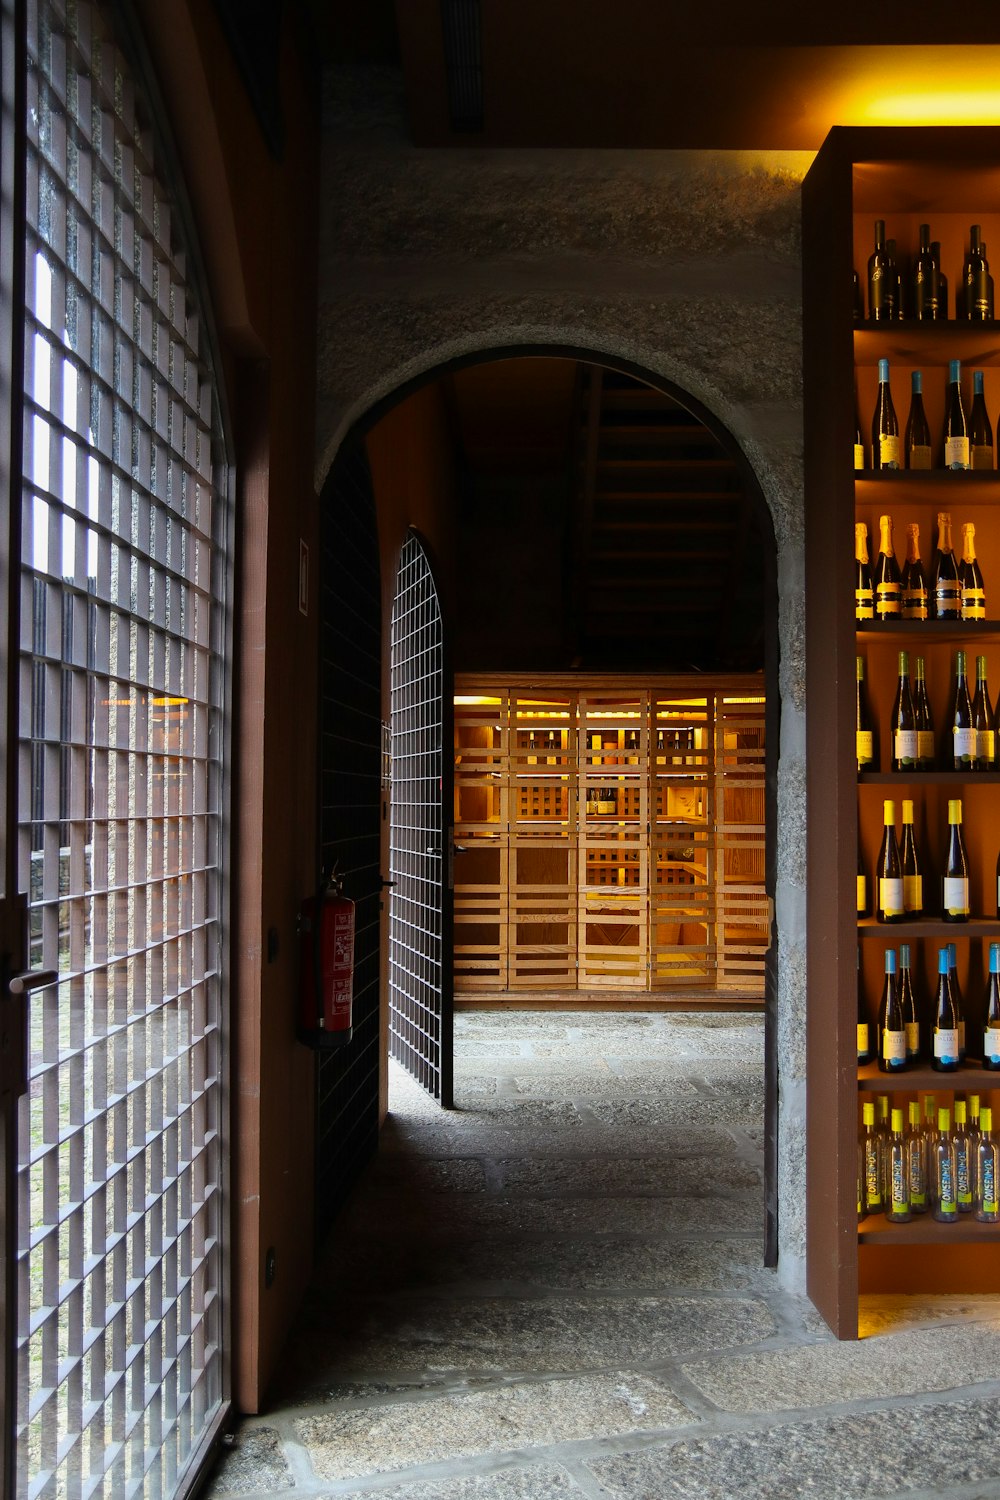 Ein Raum gefüllt mit vielen Flaschen Wein